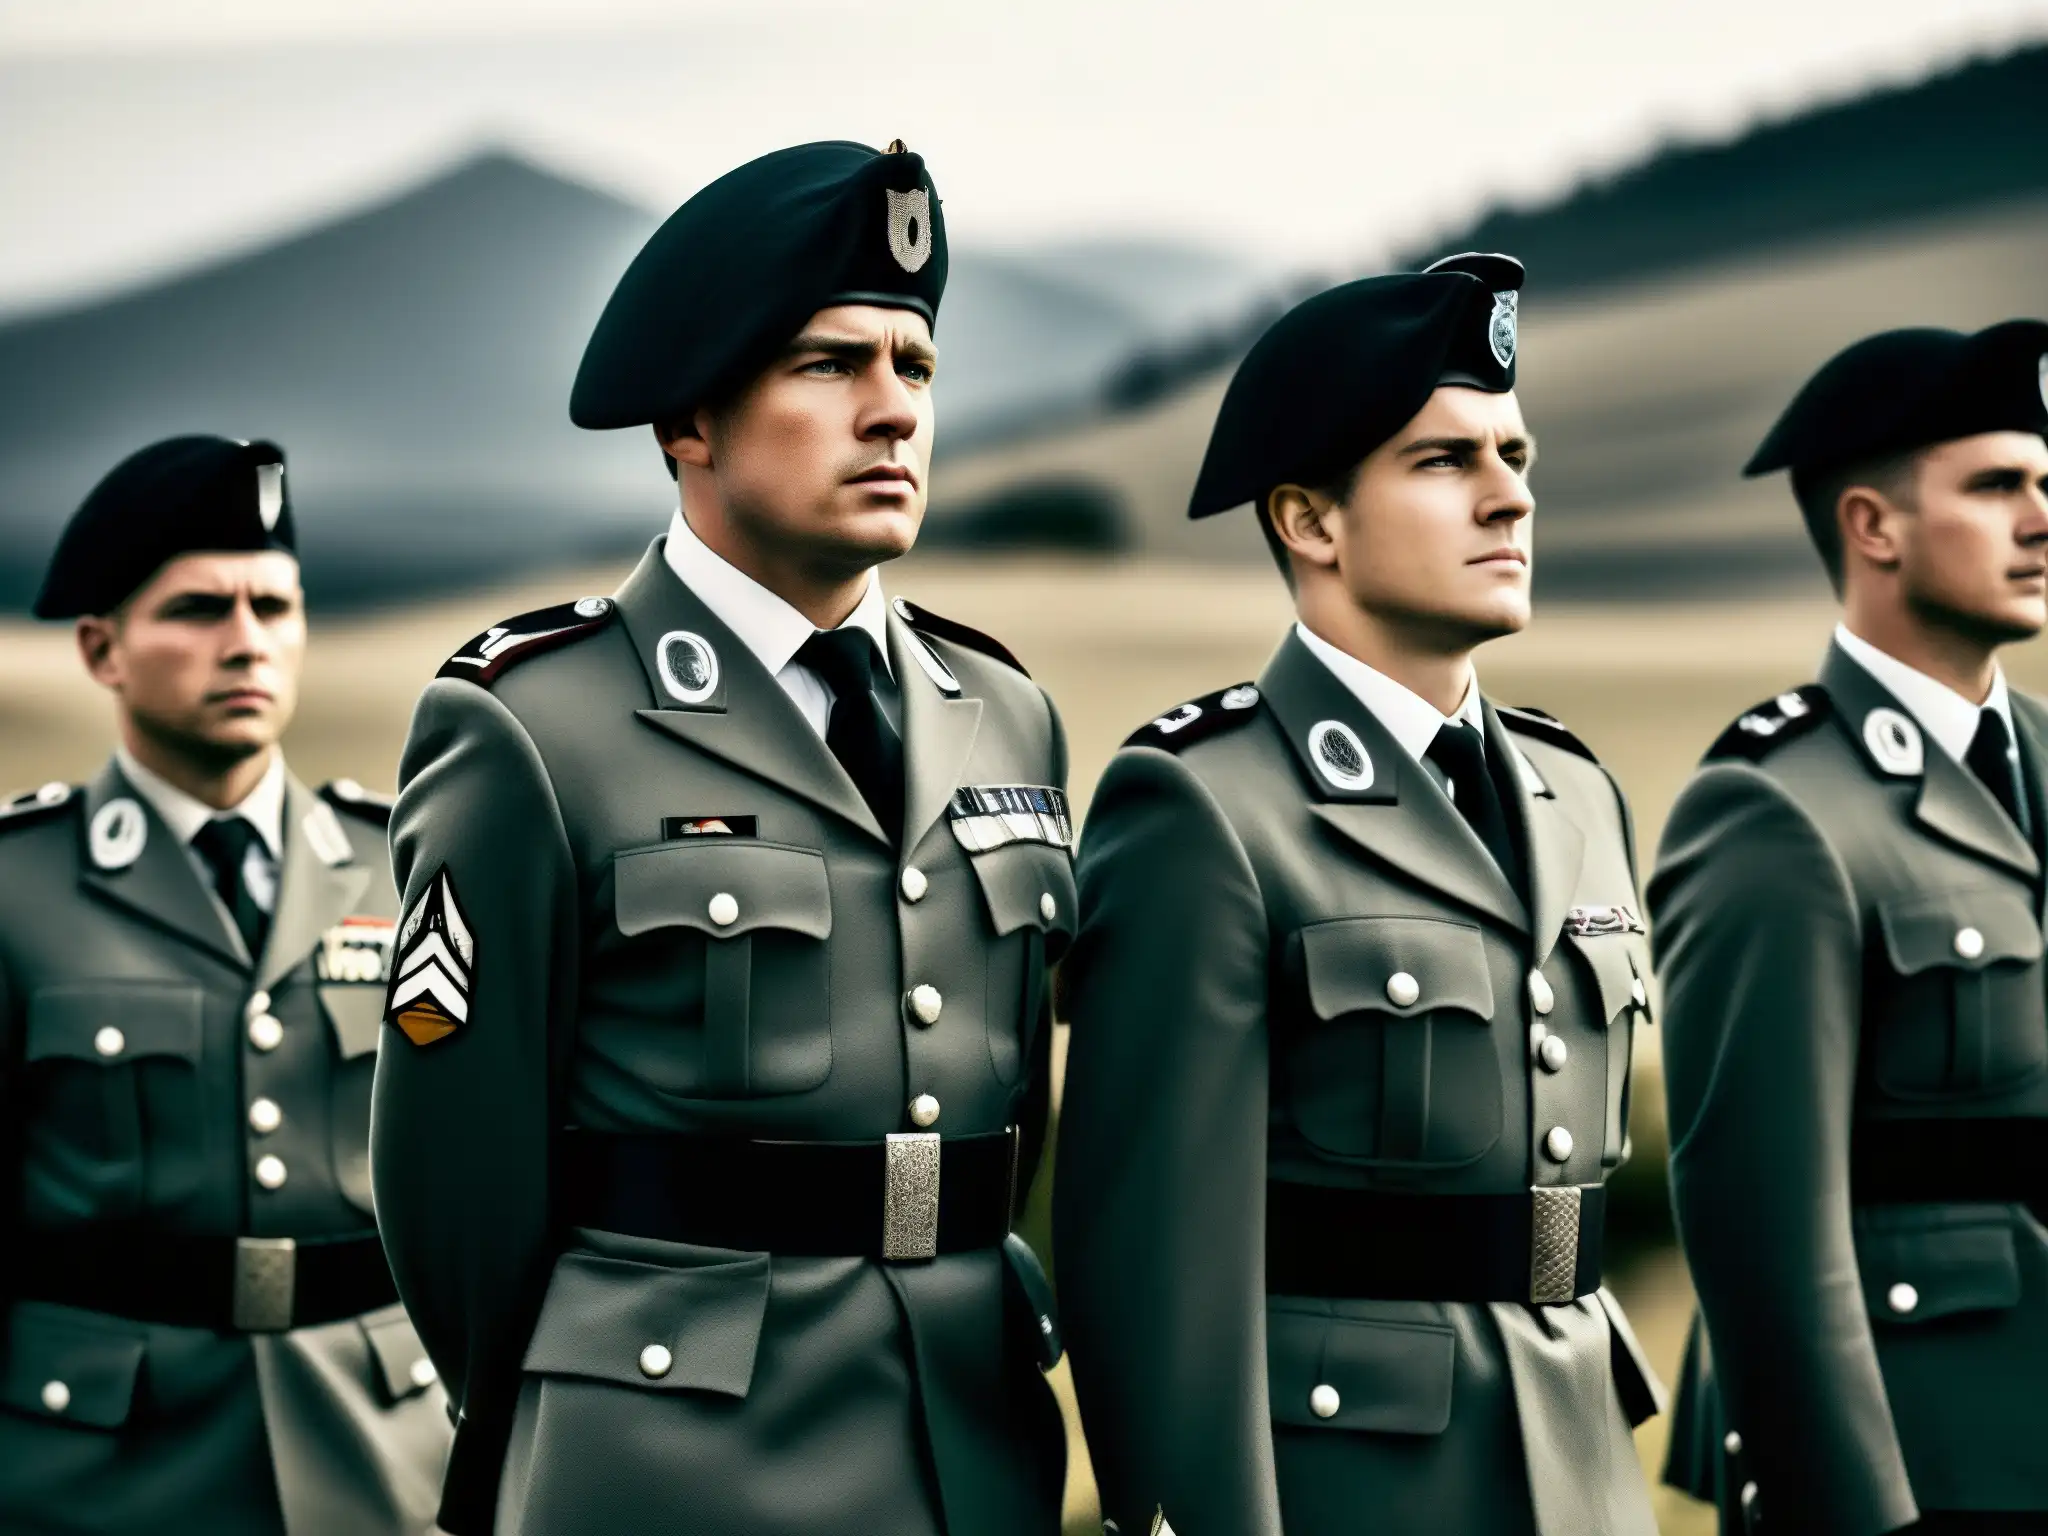 Un grupo de soldados en formación, con uniformes impecables, expresiones serias y determinadas